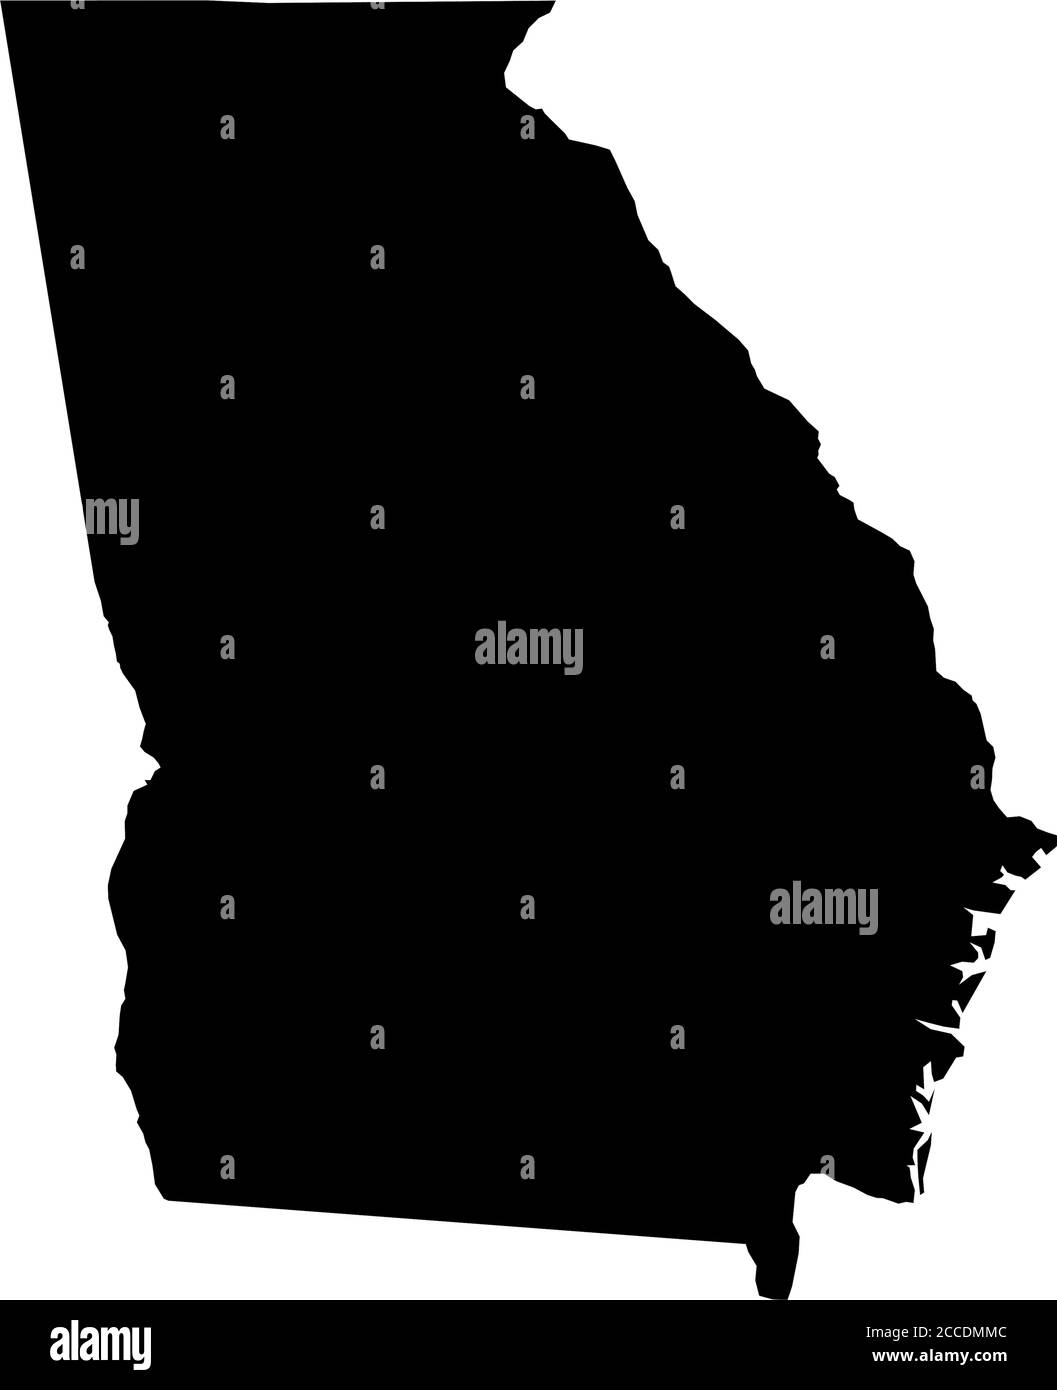 Georgia, State of USA - solide schwarze Silhouette Karte des Landes. Einfache flache Vektordarstellung. Stock Vektor